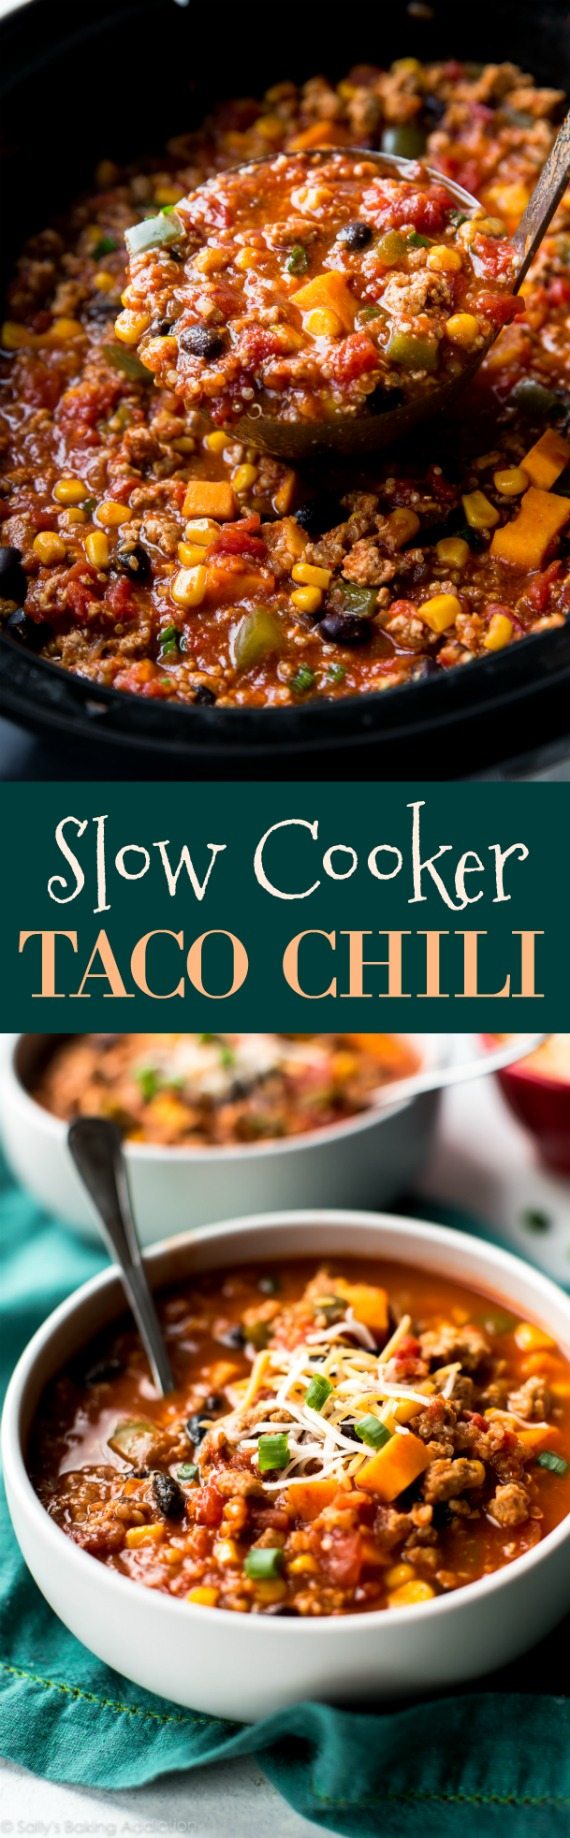 Laissez la mijoteuse faire toute la cuisine pour le dîner avec cette recette de piment taco aux épices folle et savoureuse! sallysbakingaddiction.com